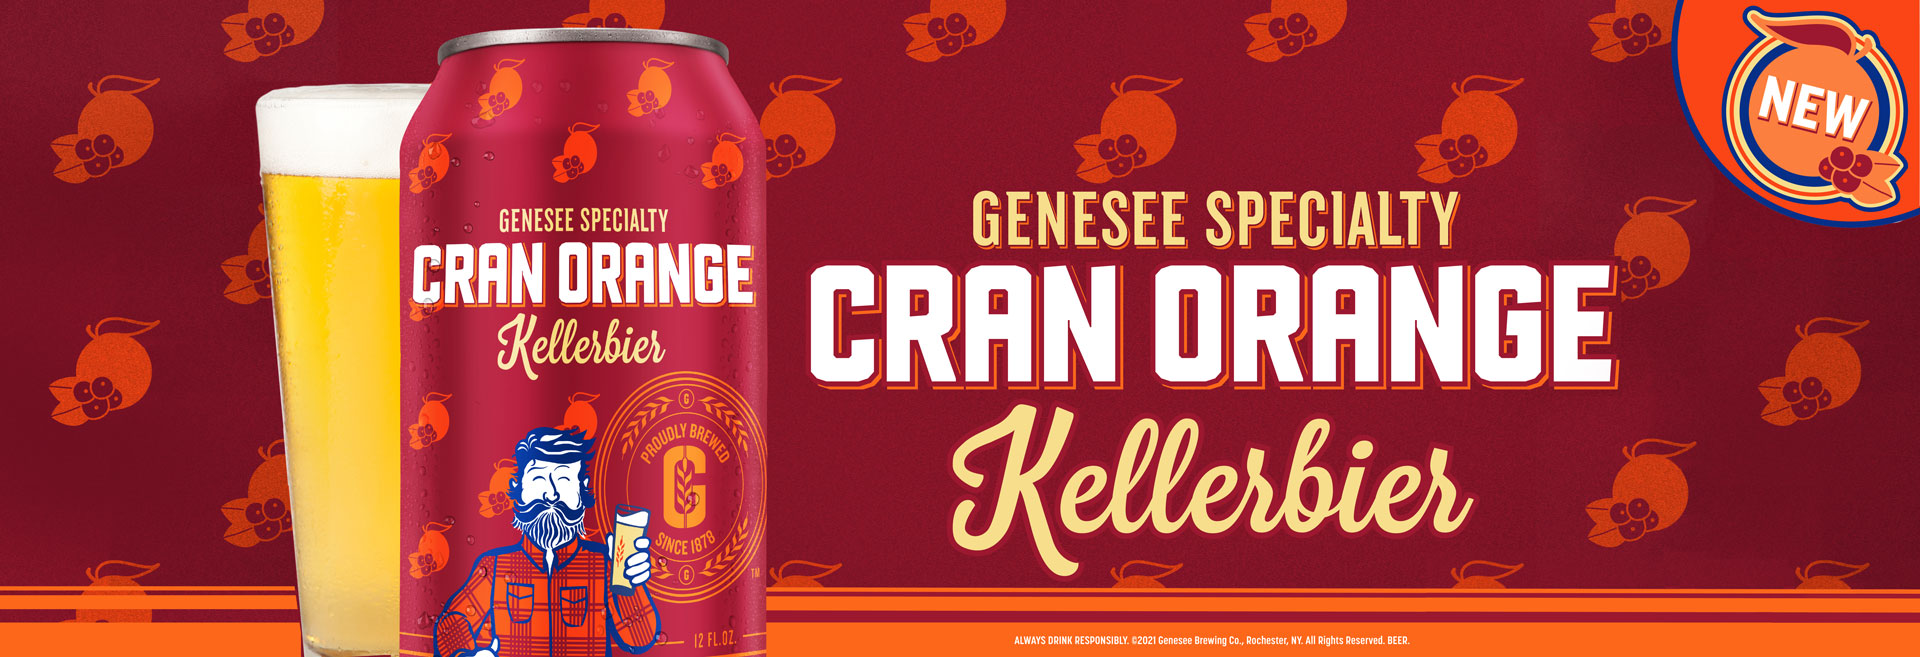 Genesee Specialty Cran Orange Kellerbier is back!